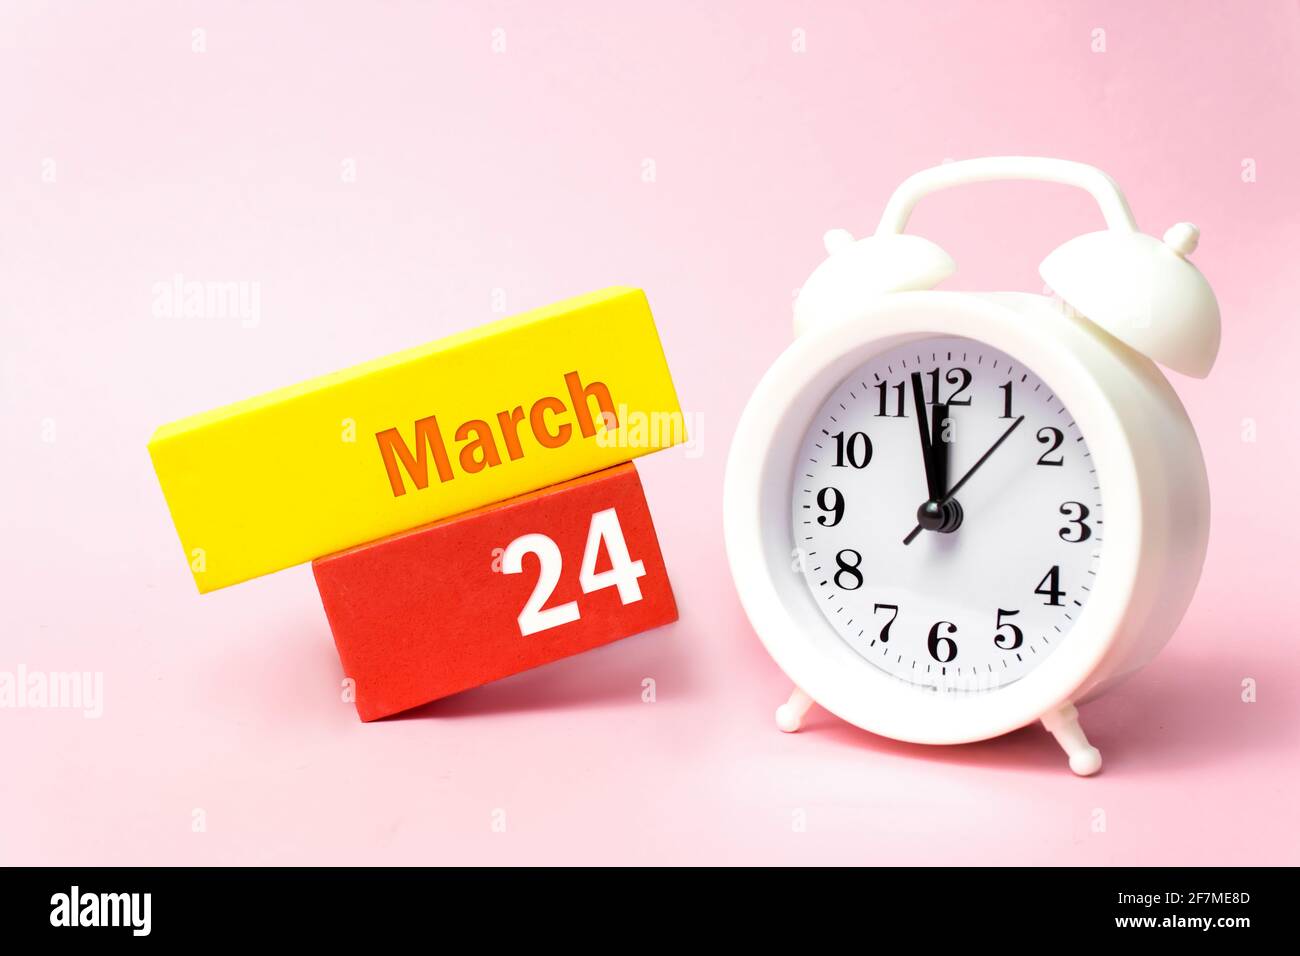 März. Tag 24 des Monats, Kalenderdatum. Weißer Wecker auf pastellrosa Hintergrund. Frühling Monat, Tag des Jahres Konzept Stockfoto